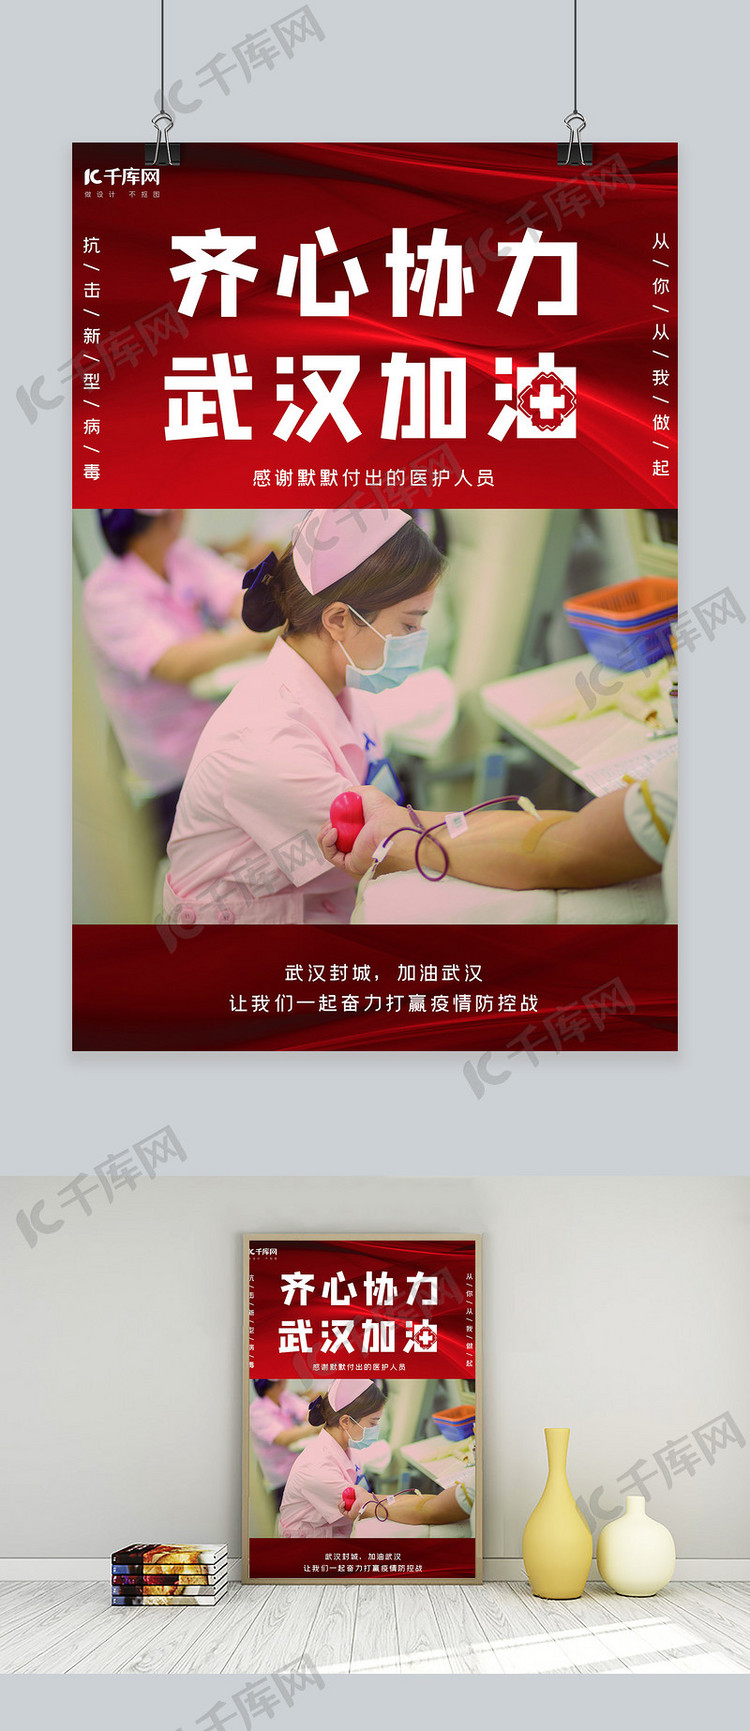 武汉加油护士红色大气海报